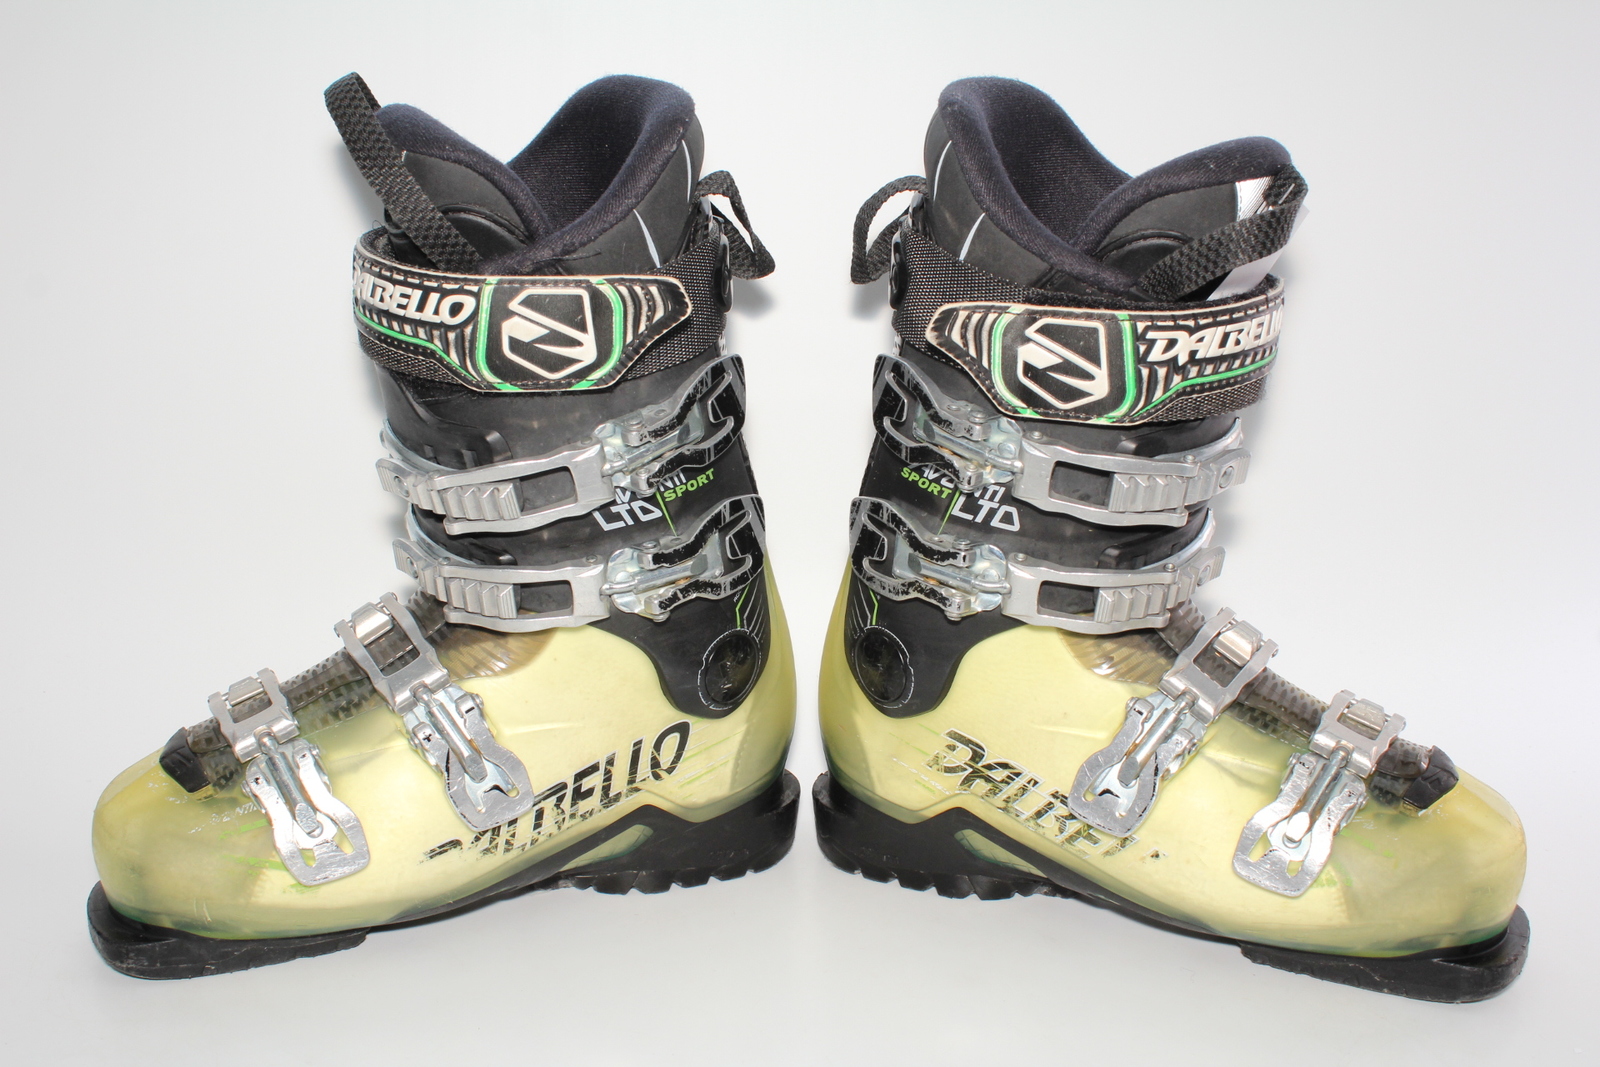 Lyžařské boty Dalbello Avanti Sport LTD vel. EU39 flexe 80